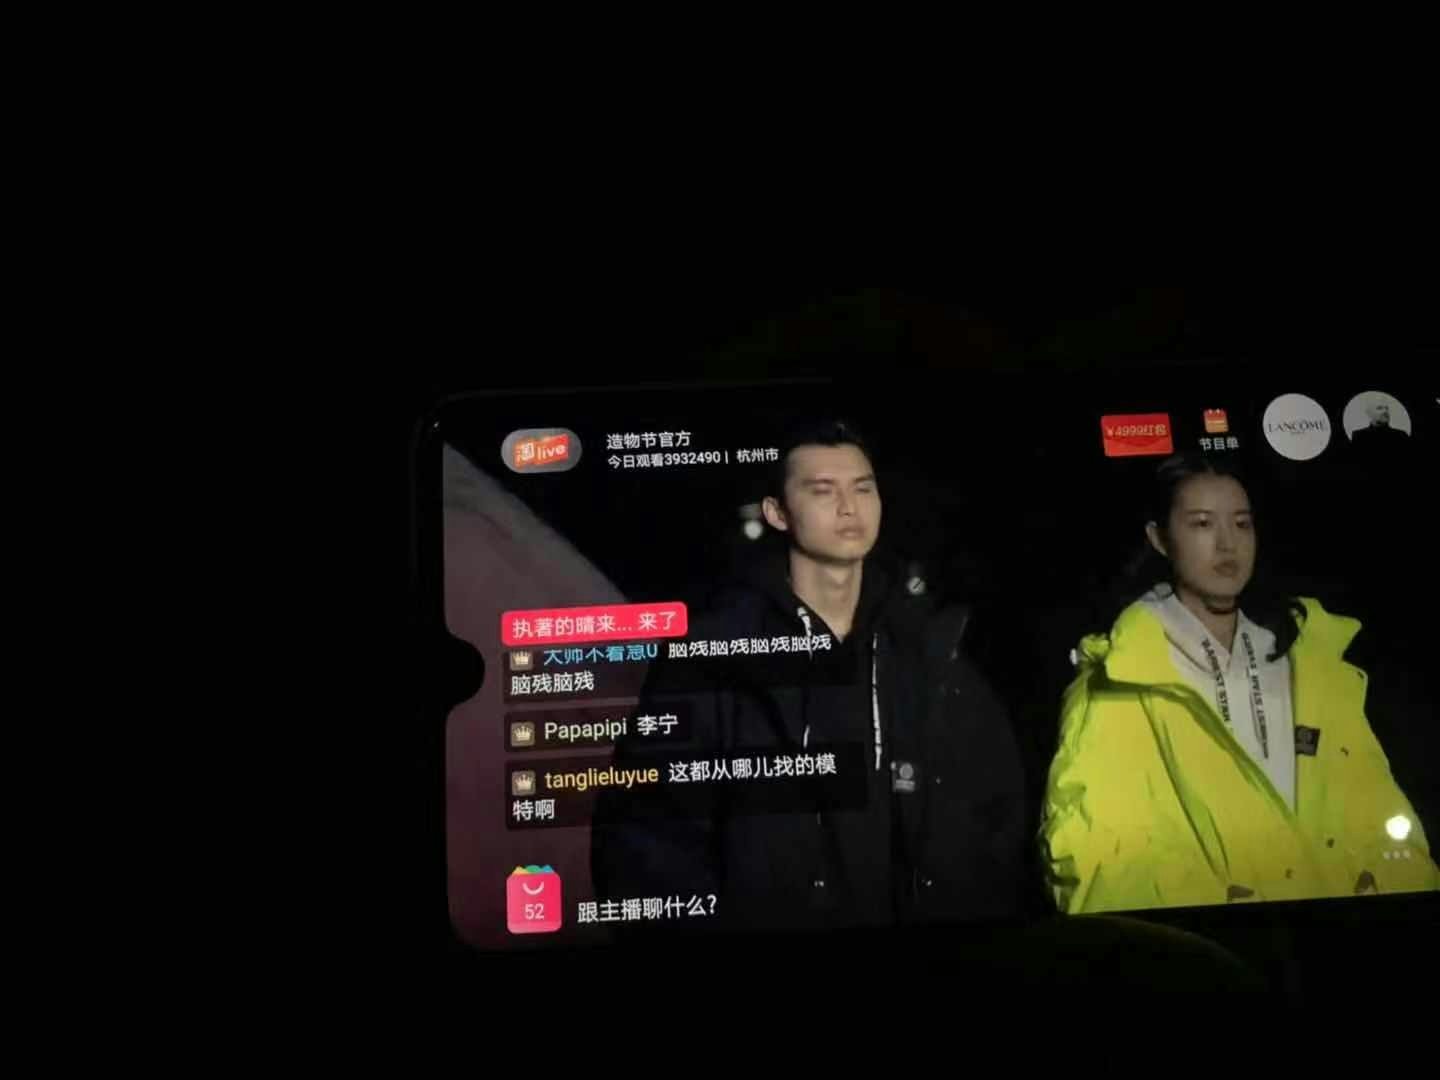 A screenshot of the live stream show online. Photo: Ruonan Zheng/Jing Daily